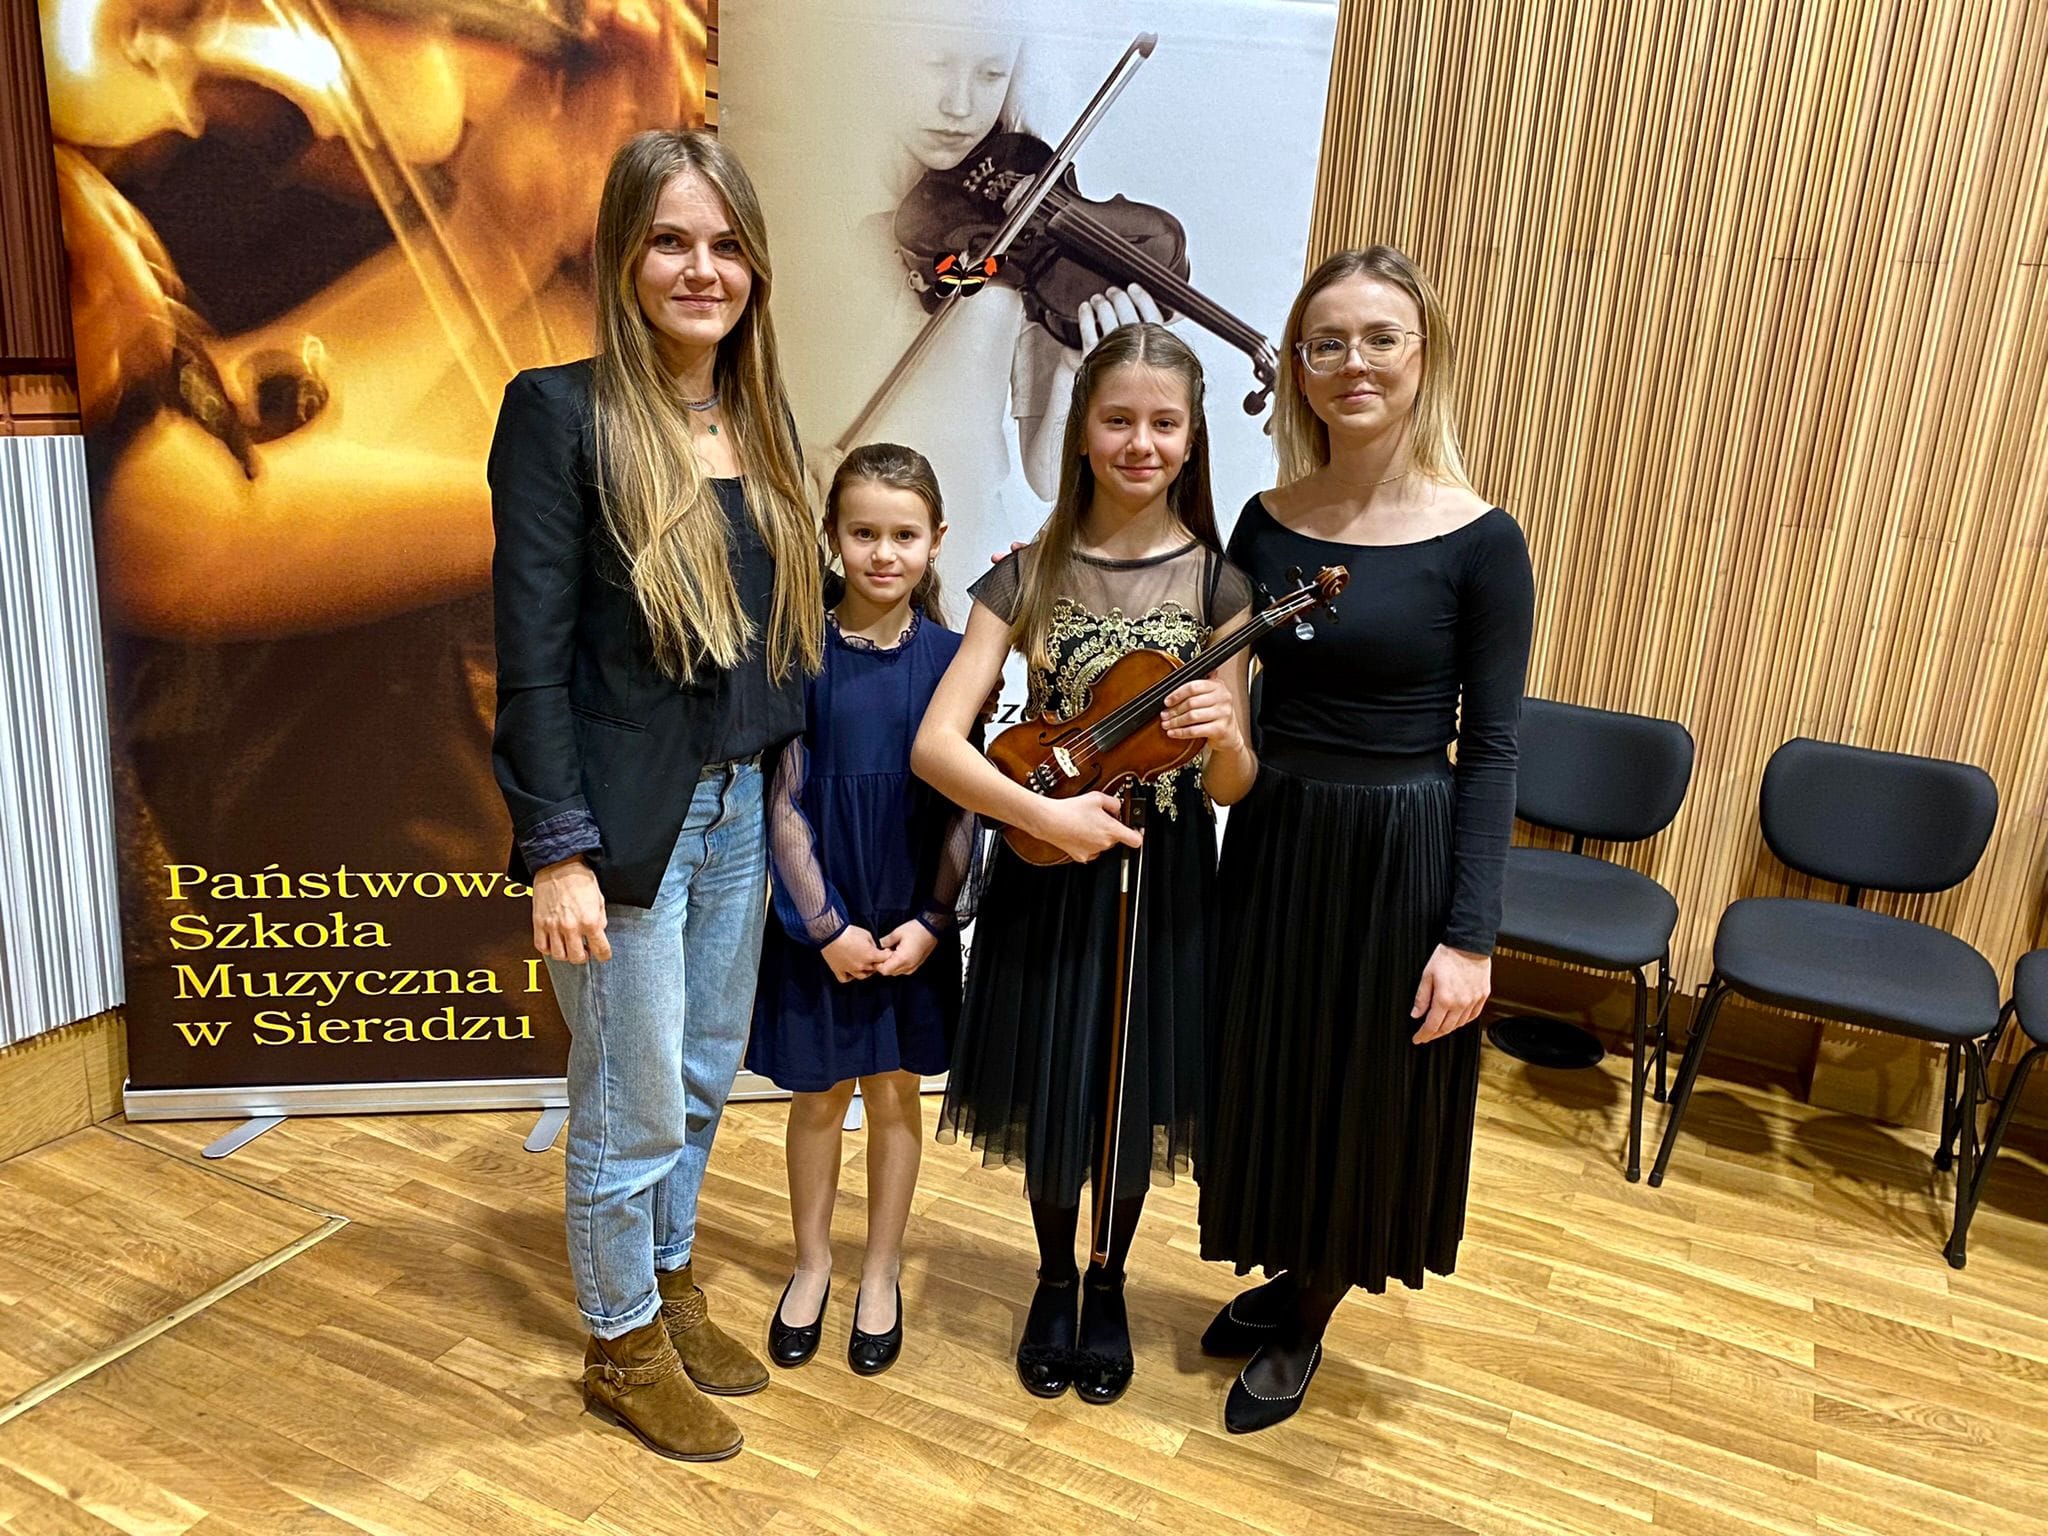 Na fotografii znajduje się nauczycielka Edyta Kornafel, uczennice Zuzanna Szczepańska oraz trzymająca w rękach skrzypce Agata Kostanowicz oraz nauczycielka Monika Duda. W tle widoczne są dwa duże szkolne roll-upy. 